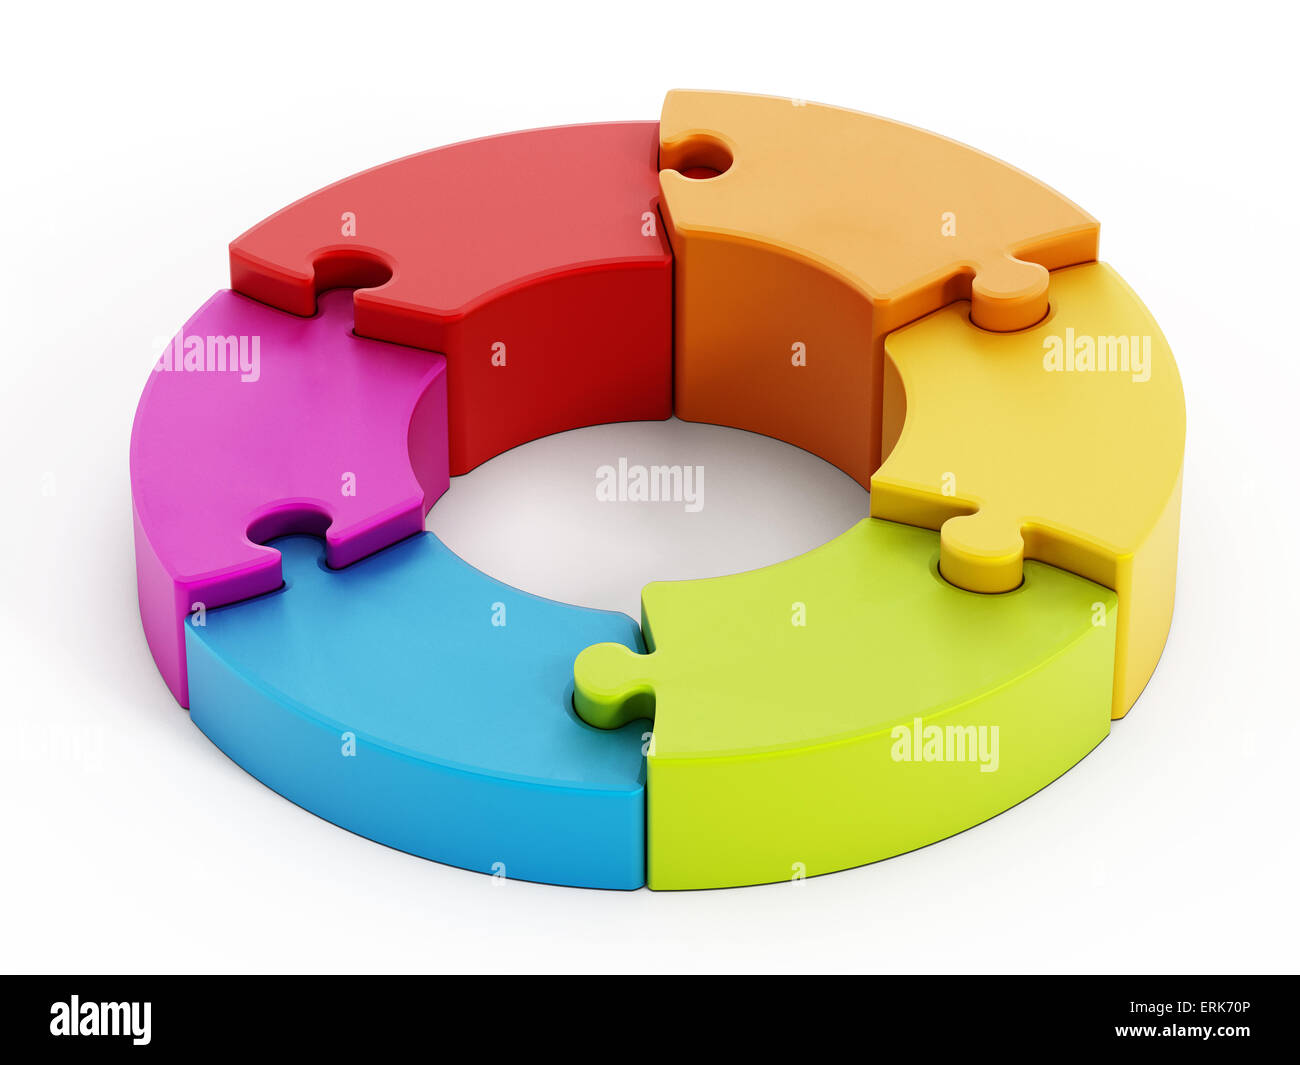 Jigsaw Puzzle-Teile bilden einen Kreis miteinander verbunden. Stockfoto